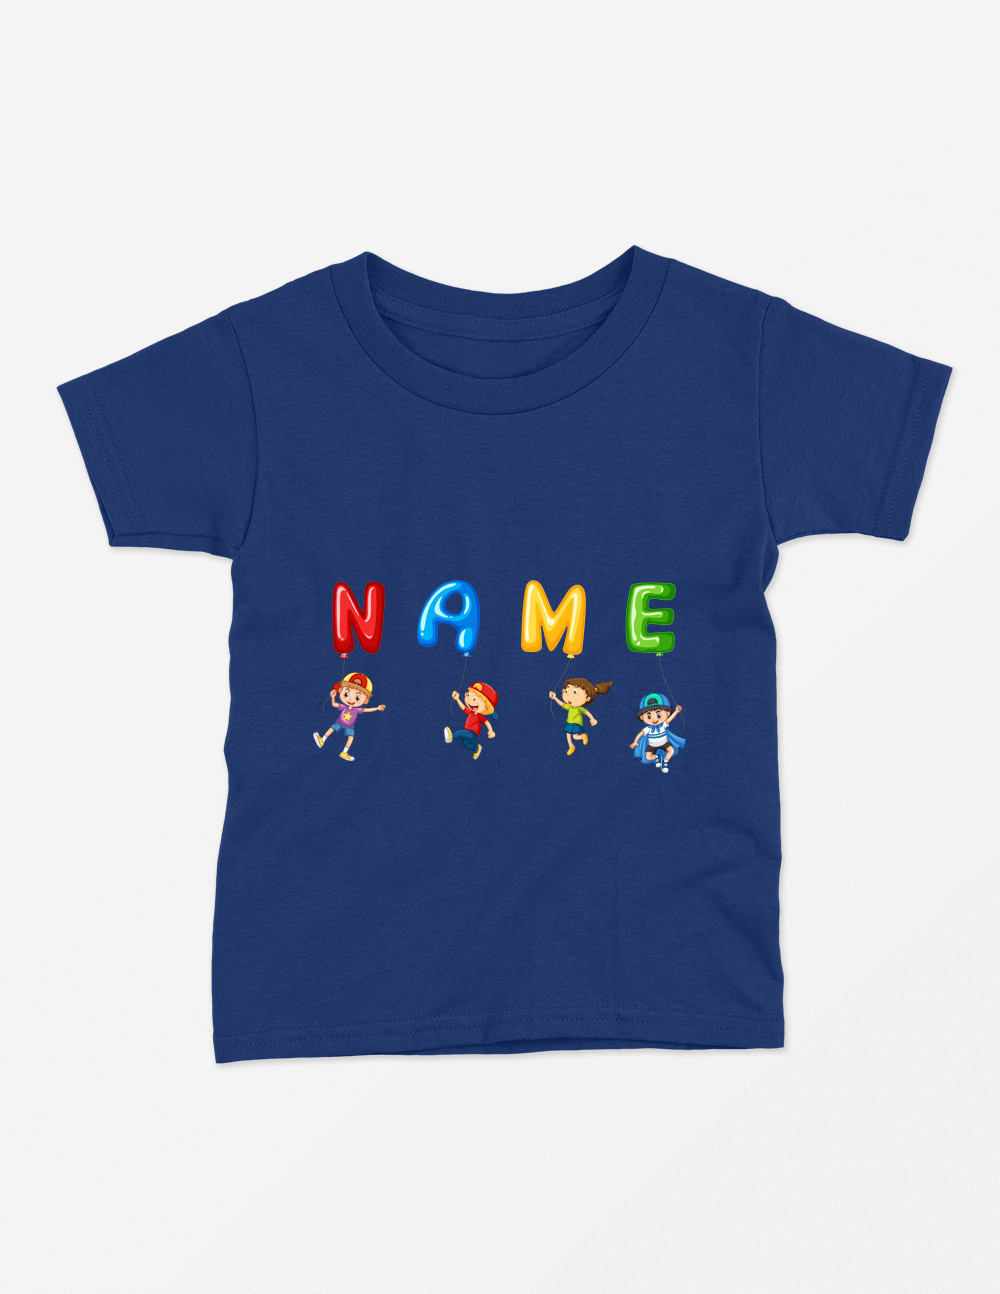 Custom Name navy blue tshirt